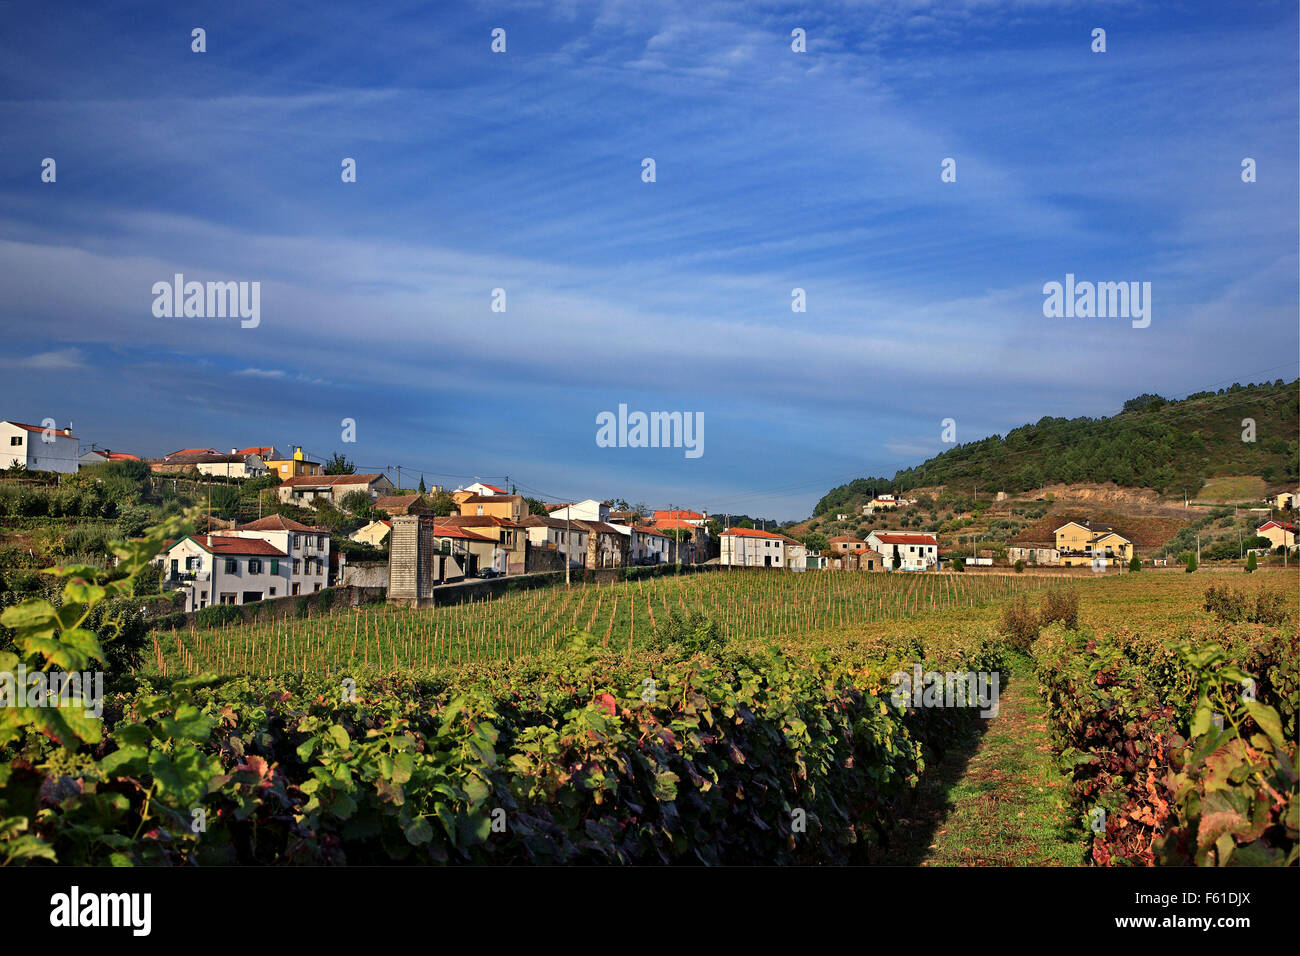 Vignoble dans la région de Viana do Castelo village, dans la région viticole du Haut-Douro (site du patrimoine mondial de l'UNESCO), Porto e Norte, Portugal Banque D'Images